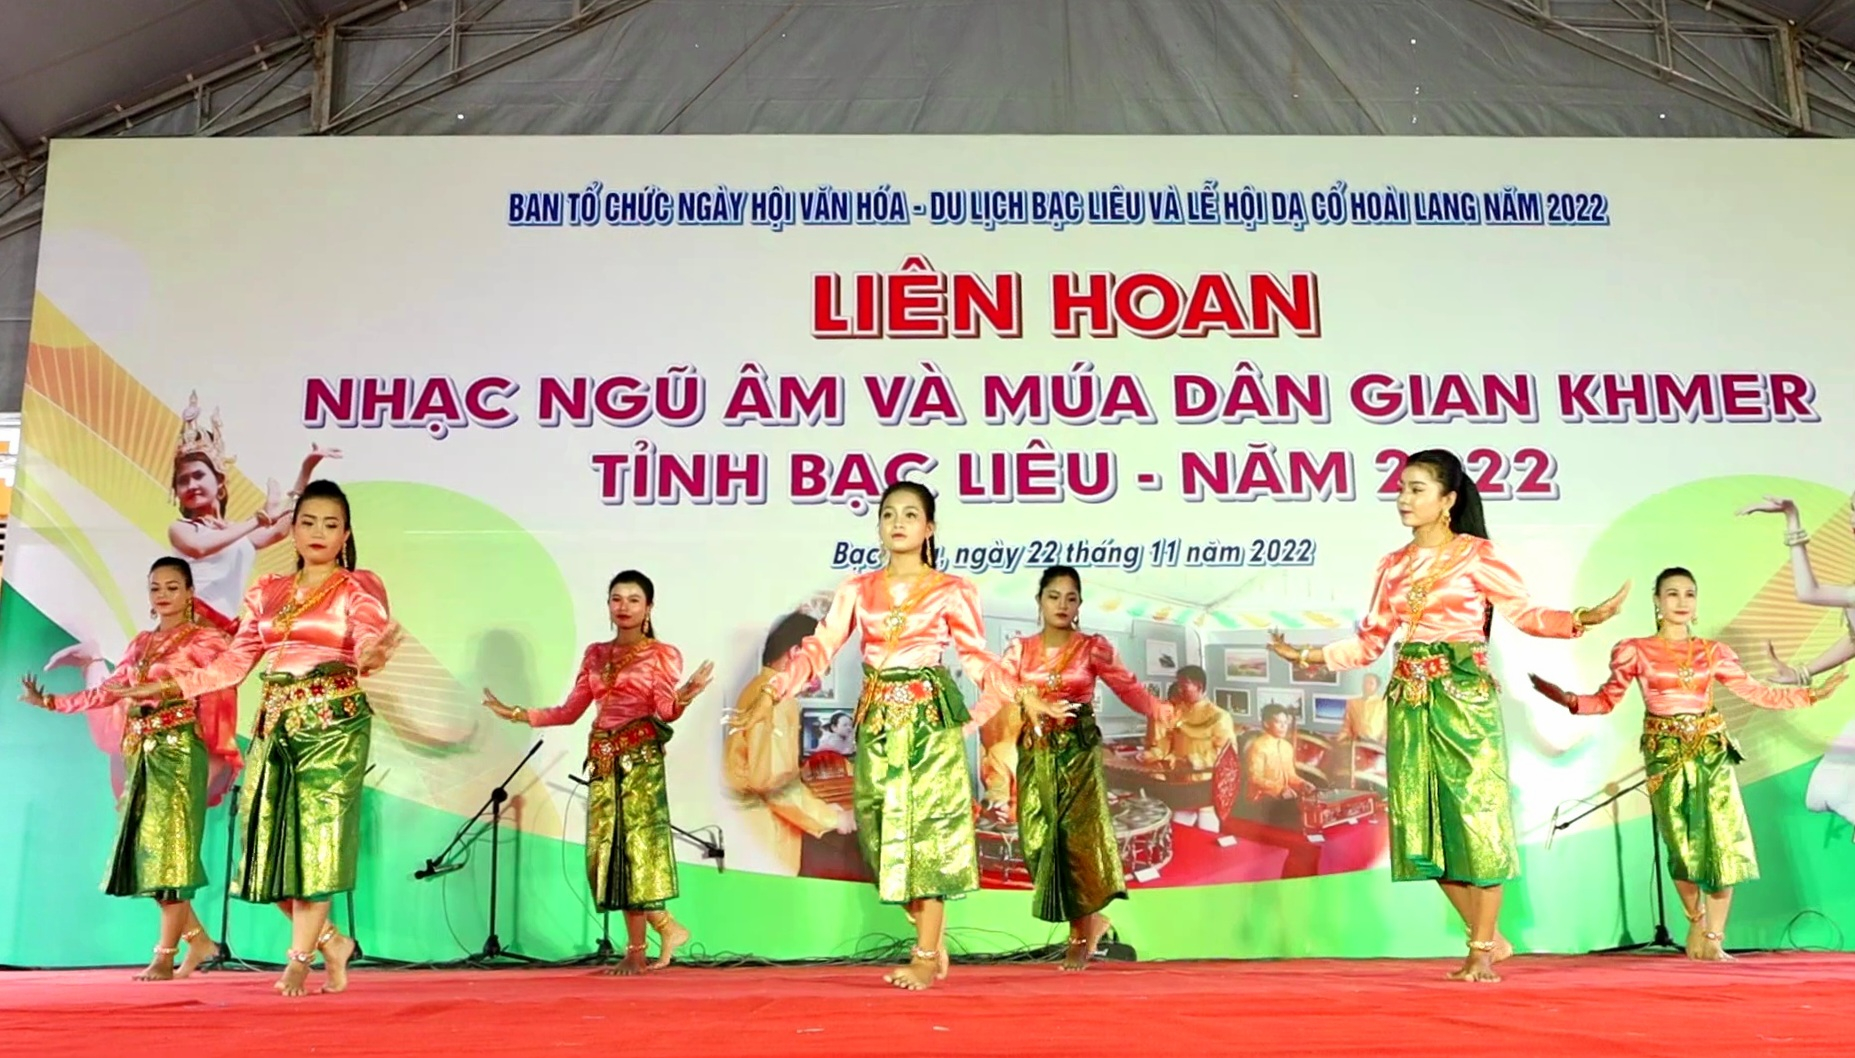 Đội nghệ thuật Khmer chùa Đìa Muồn, huyện Phước Long, tỉnh Bạc Liêu tham gia liên hoan.